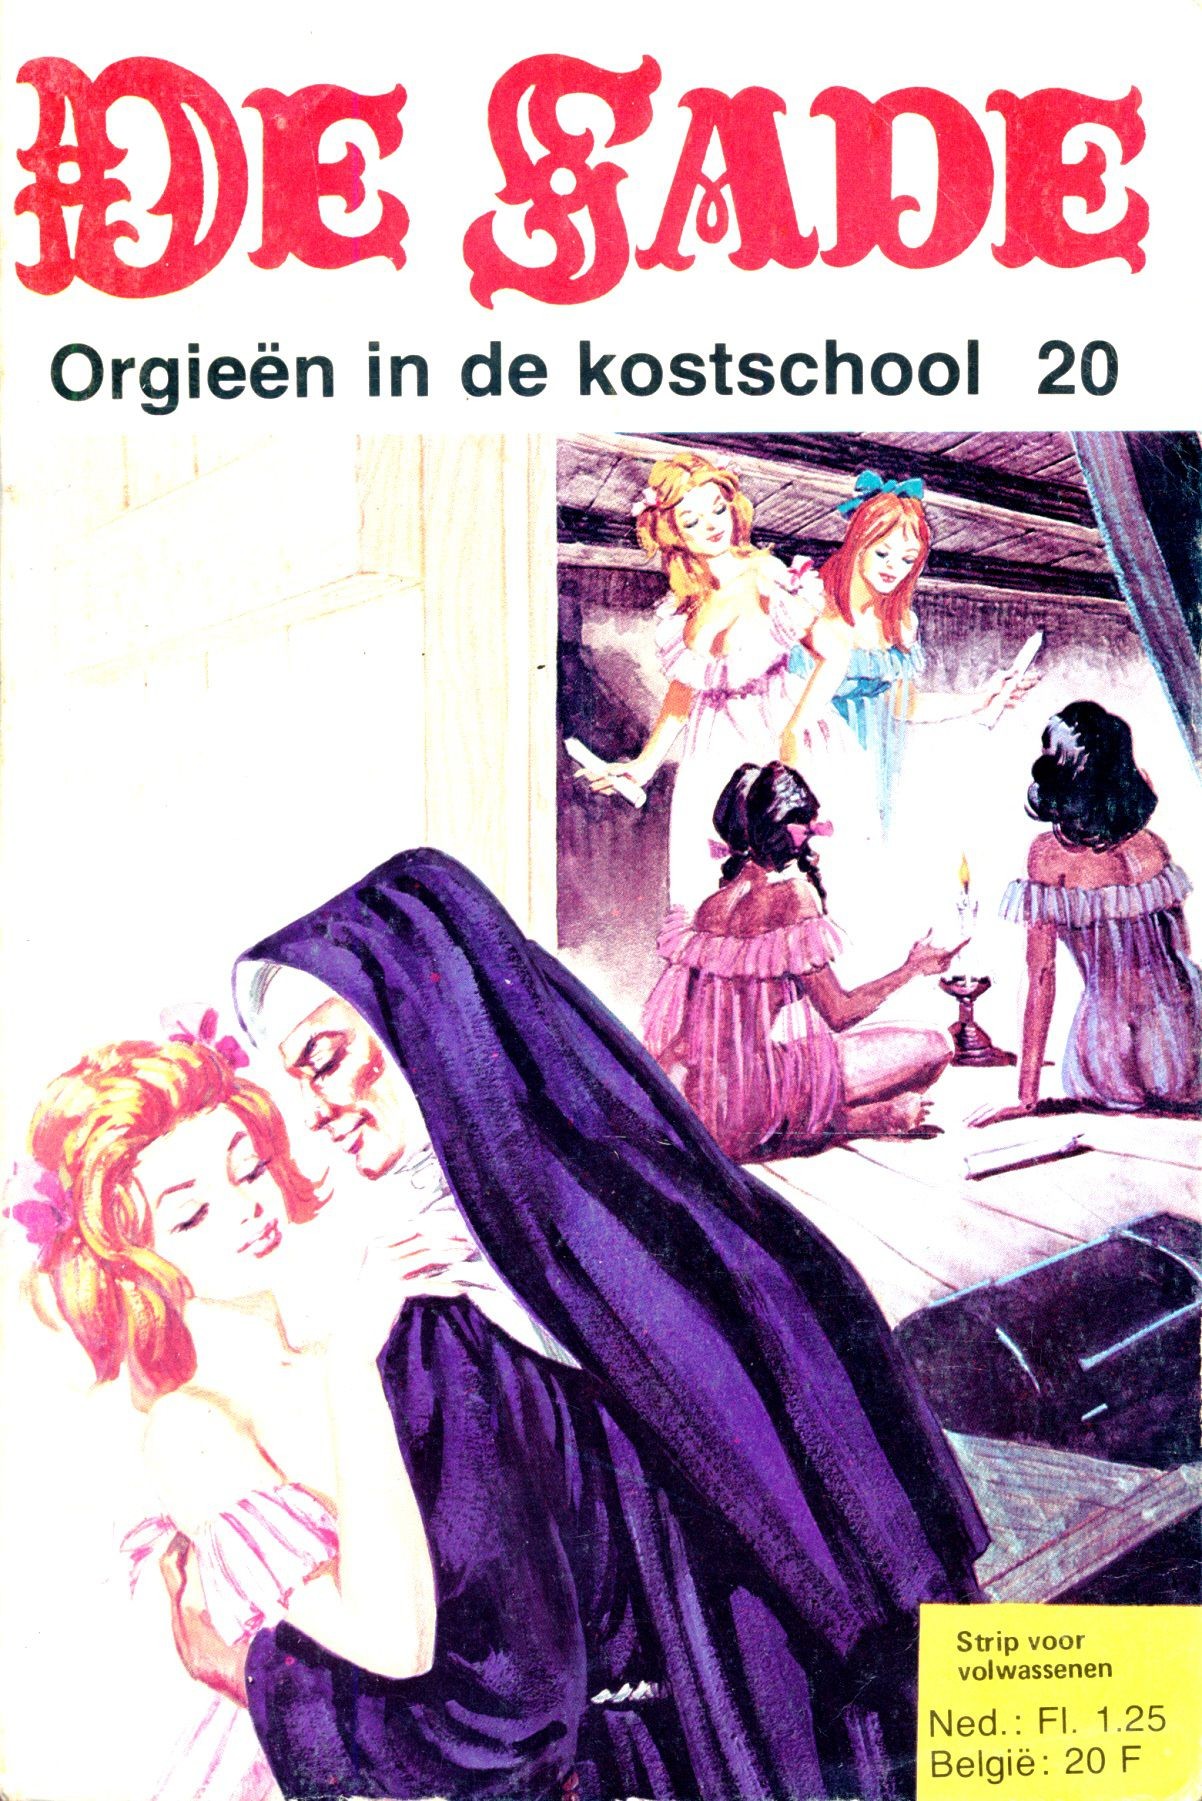 Porn Blow Jobs Orgieën In De Kostschool (Dutch) In 5 Series...53 Nog Niet Geplaatste Strips Uit De "De Sade" Serie Culo Grande